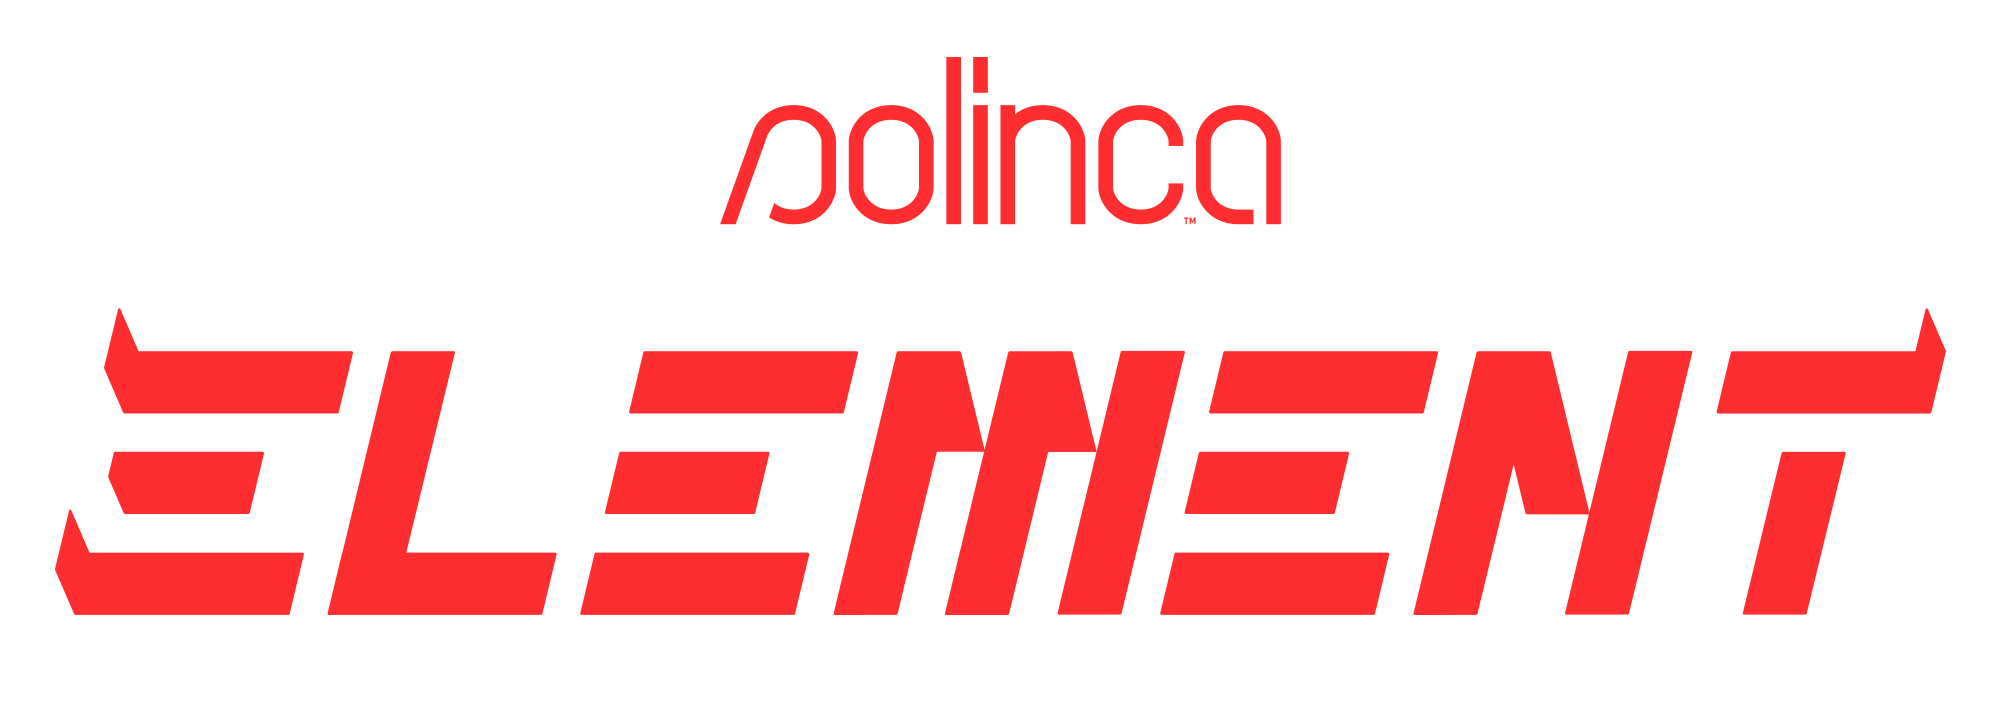 Element é a nova marca da Sonae criada para “revolucionar mercado do fitness low cost” - Meios & Publicidade